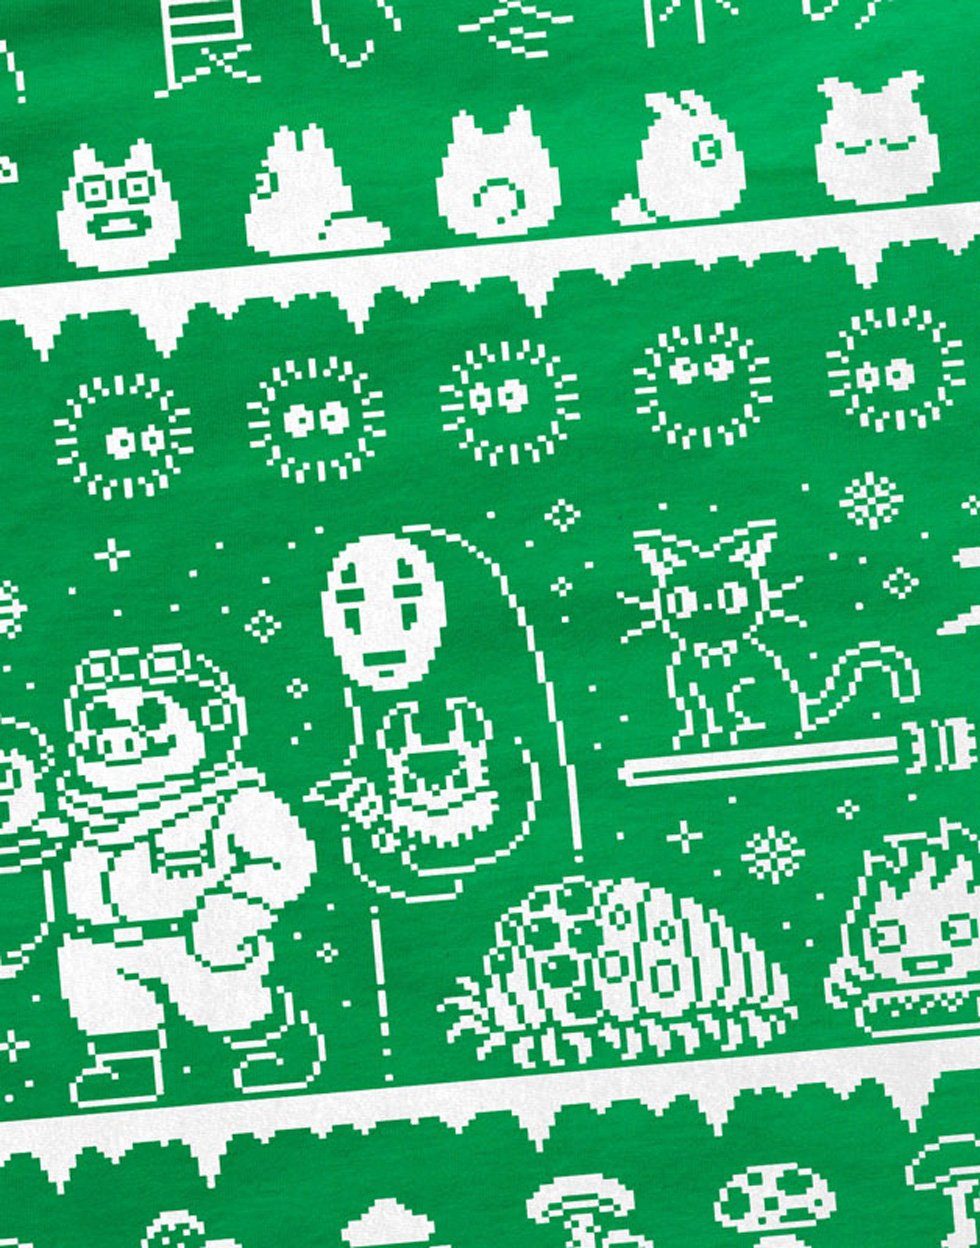 Ghibli T-Shirt t grün totoro mononoke Herren Christmas style3 film Anime chihiro Print-Shirt schloss Sweater